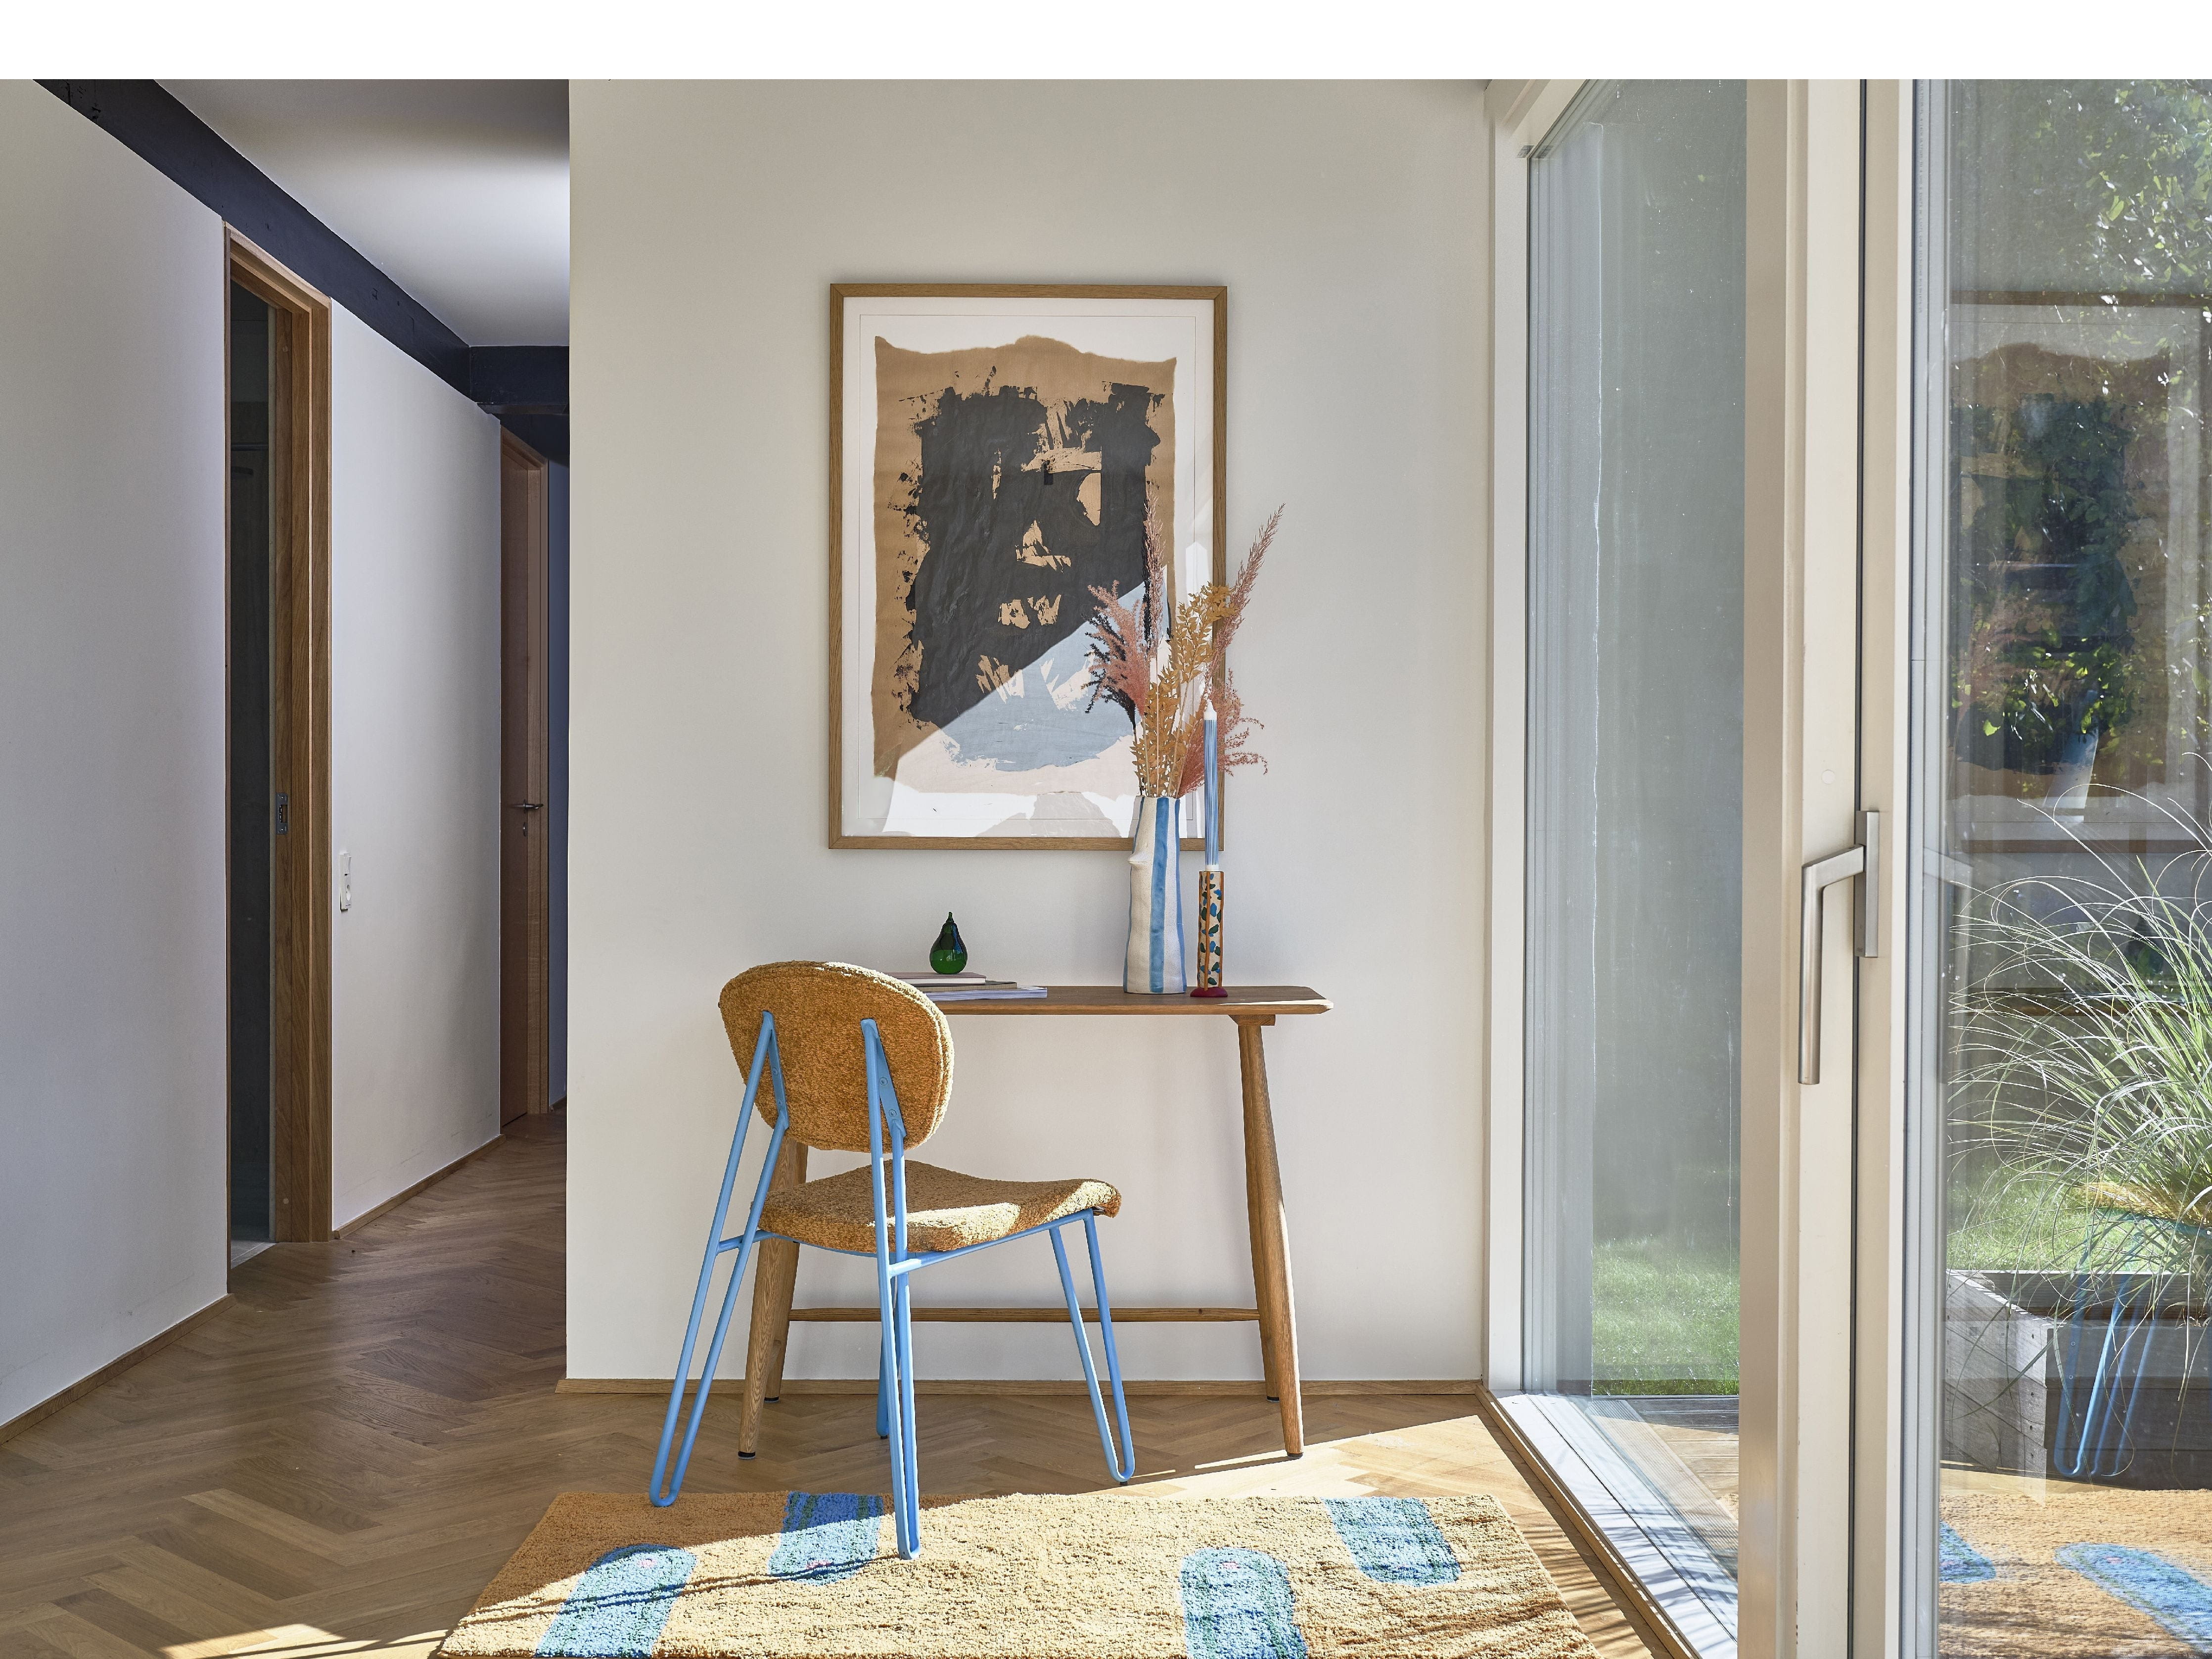 Chaise de styles de collection Villa, bleu / marron